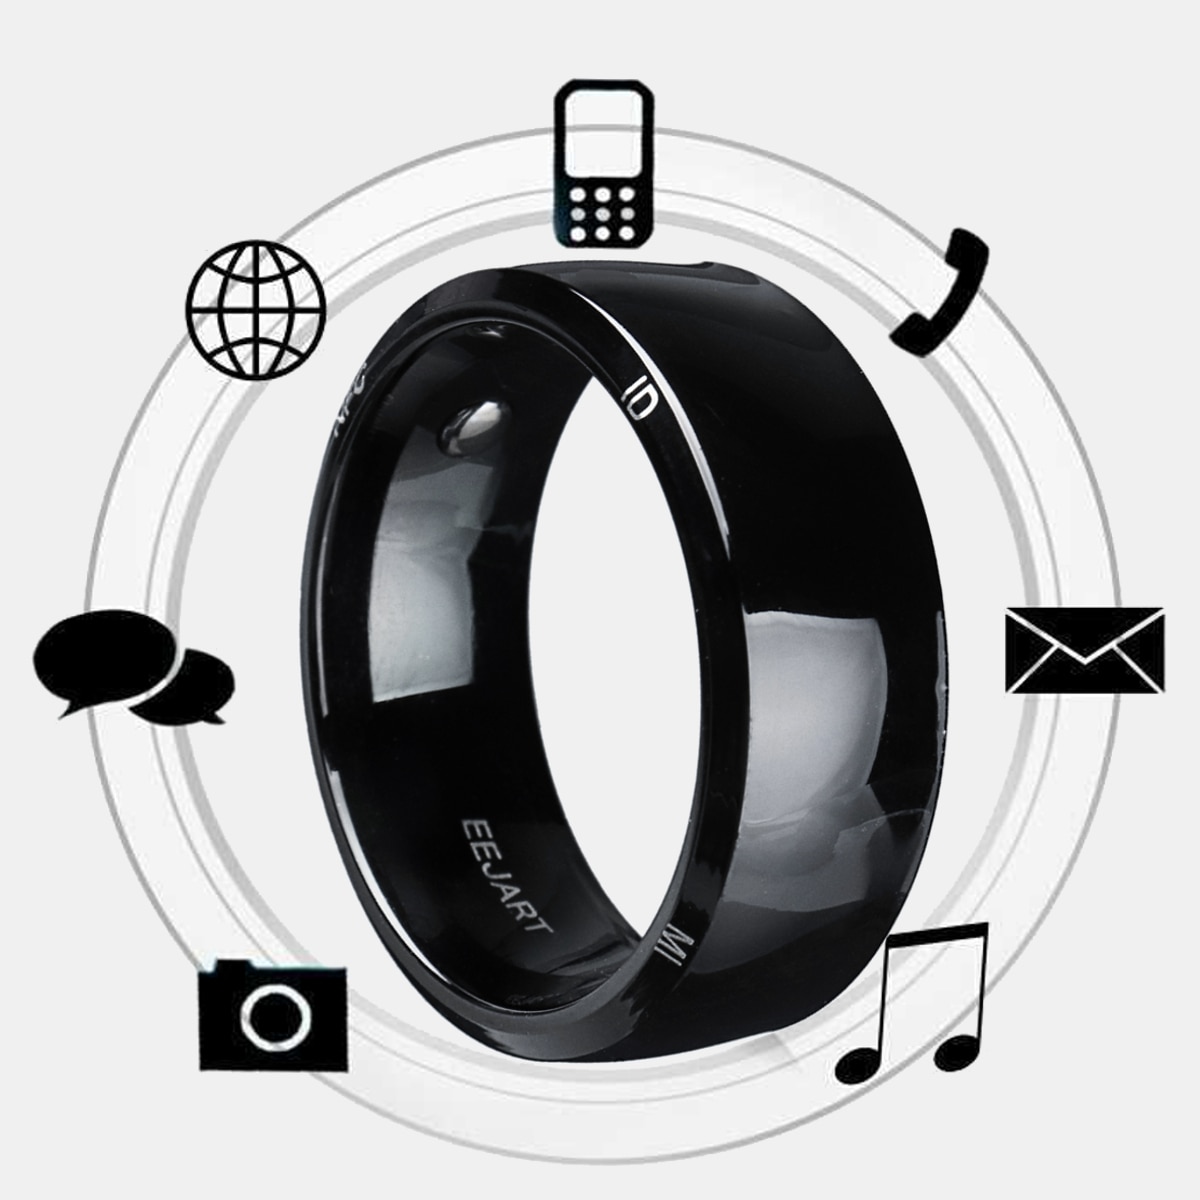 Vandtæt oplåsning sundhedsbeskyttelse smart ring slidteknologi magisk finger nfc ring til android windows nfc mobiltelefon